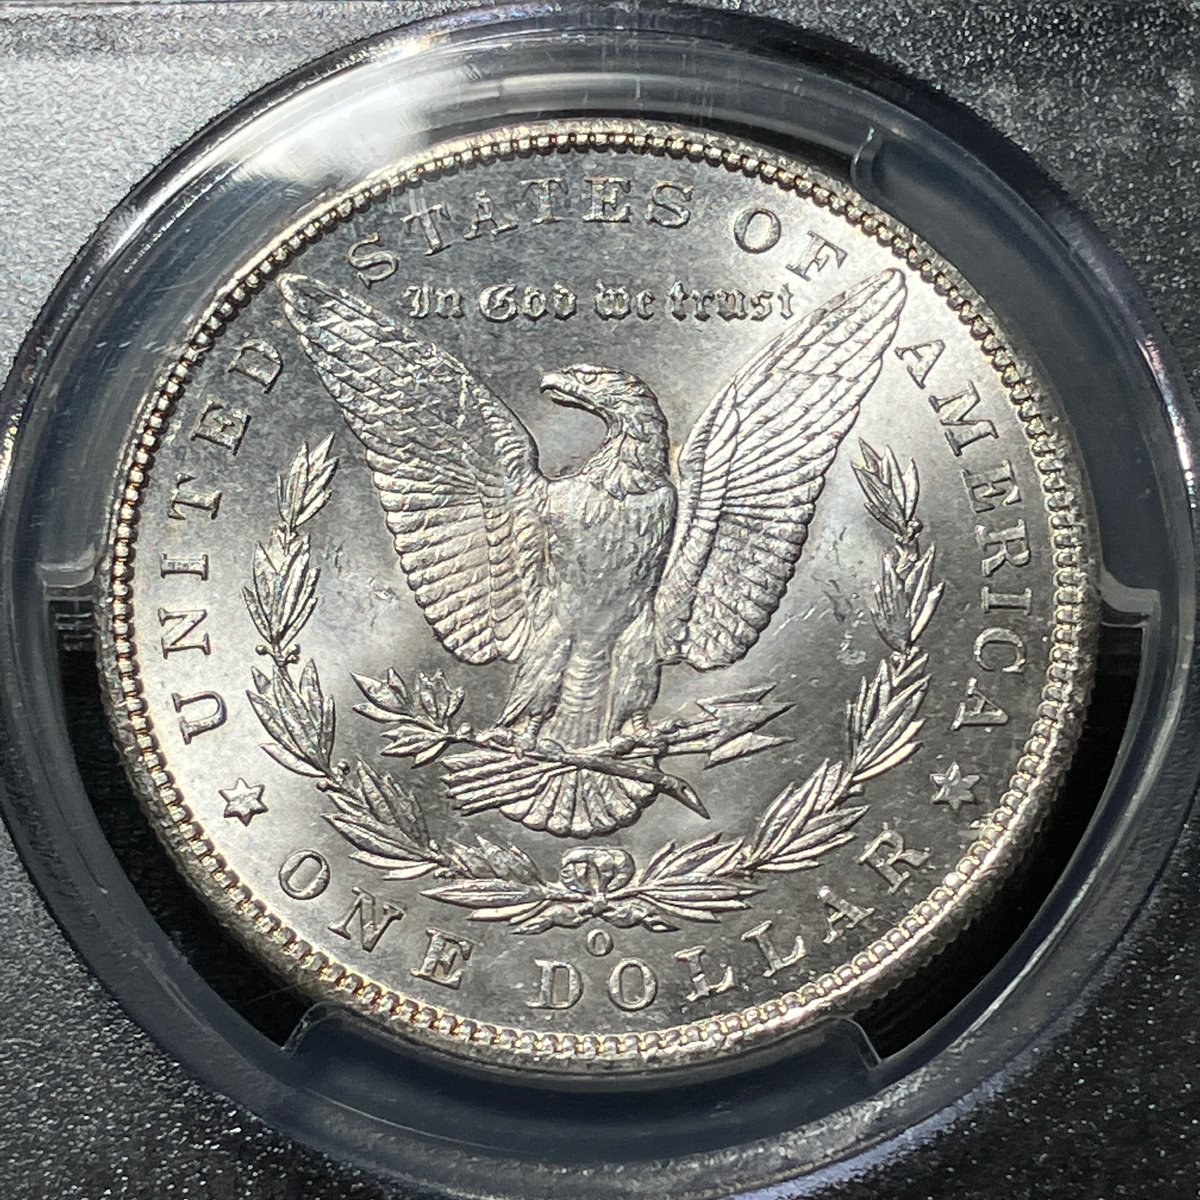 モルガンダラー銀貨 1904-O
アメリカの円銀という感じ。時代的にもその認識でいいはず。だけど、量目が円銀26.96g（.900）に対してこちらは26.73 g（.900）ちなみにメキシコ１ペソ銀貨は27.0730 g（.9027）。なんで微妙にズレてるんだろう。
何はともあれ、落ち着いたいいデザインだ。
#MorganDollar